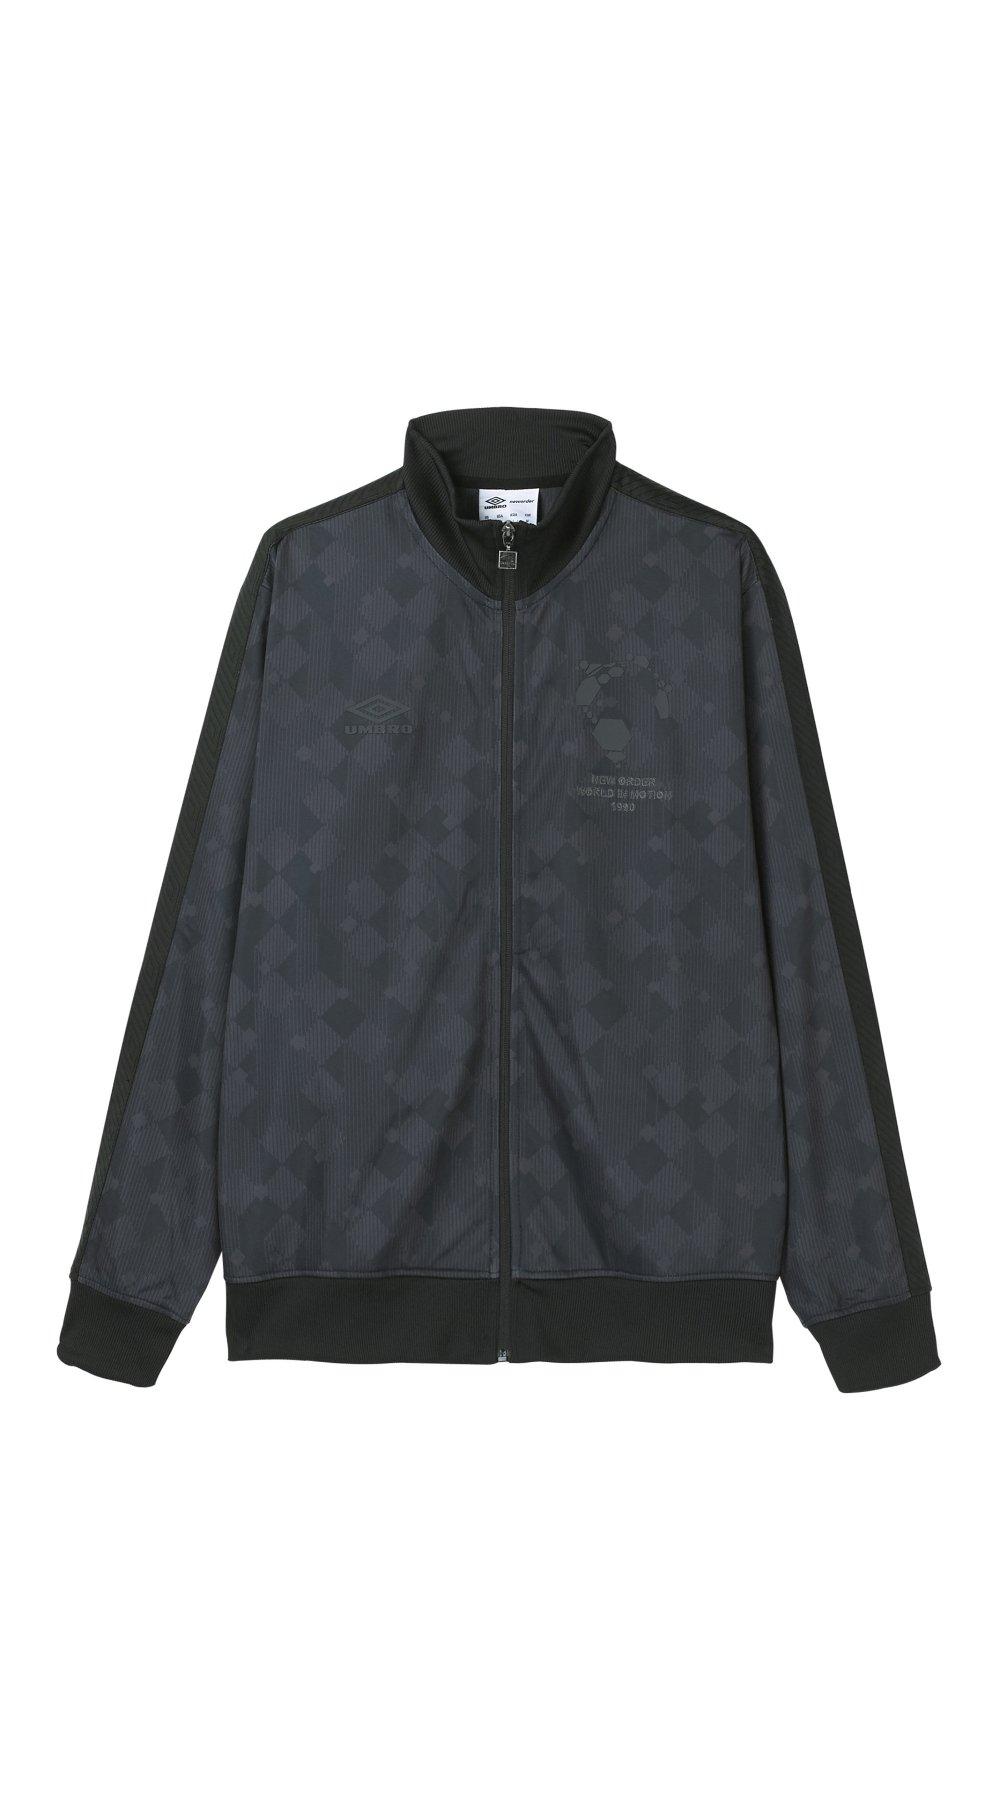 Праздничная куртка нового заказа Umbro, черный